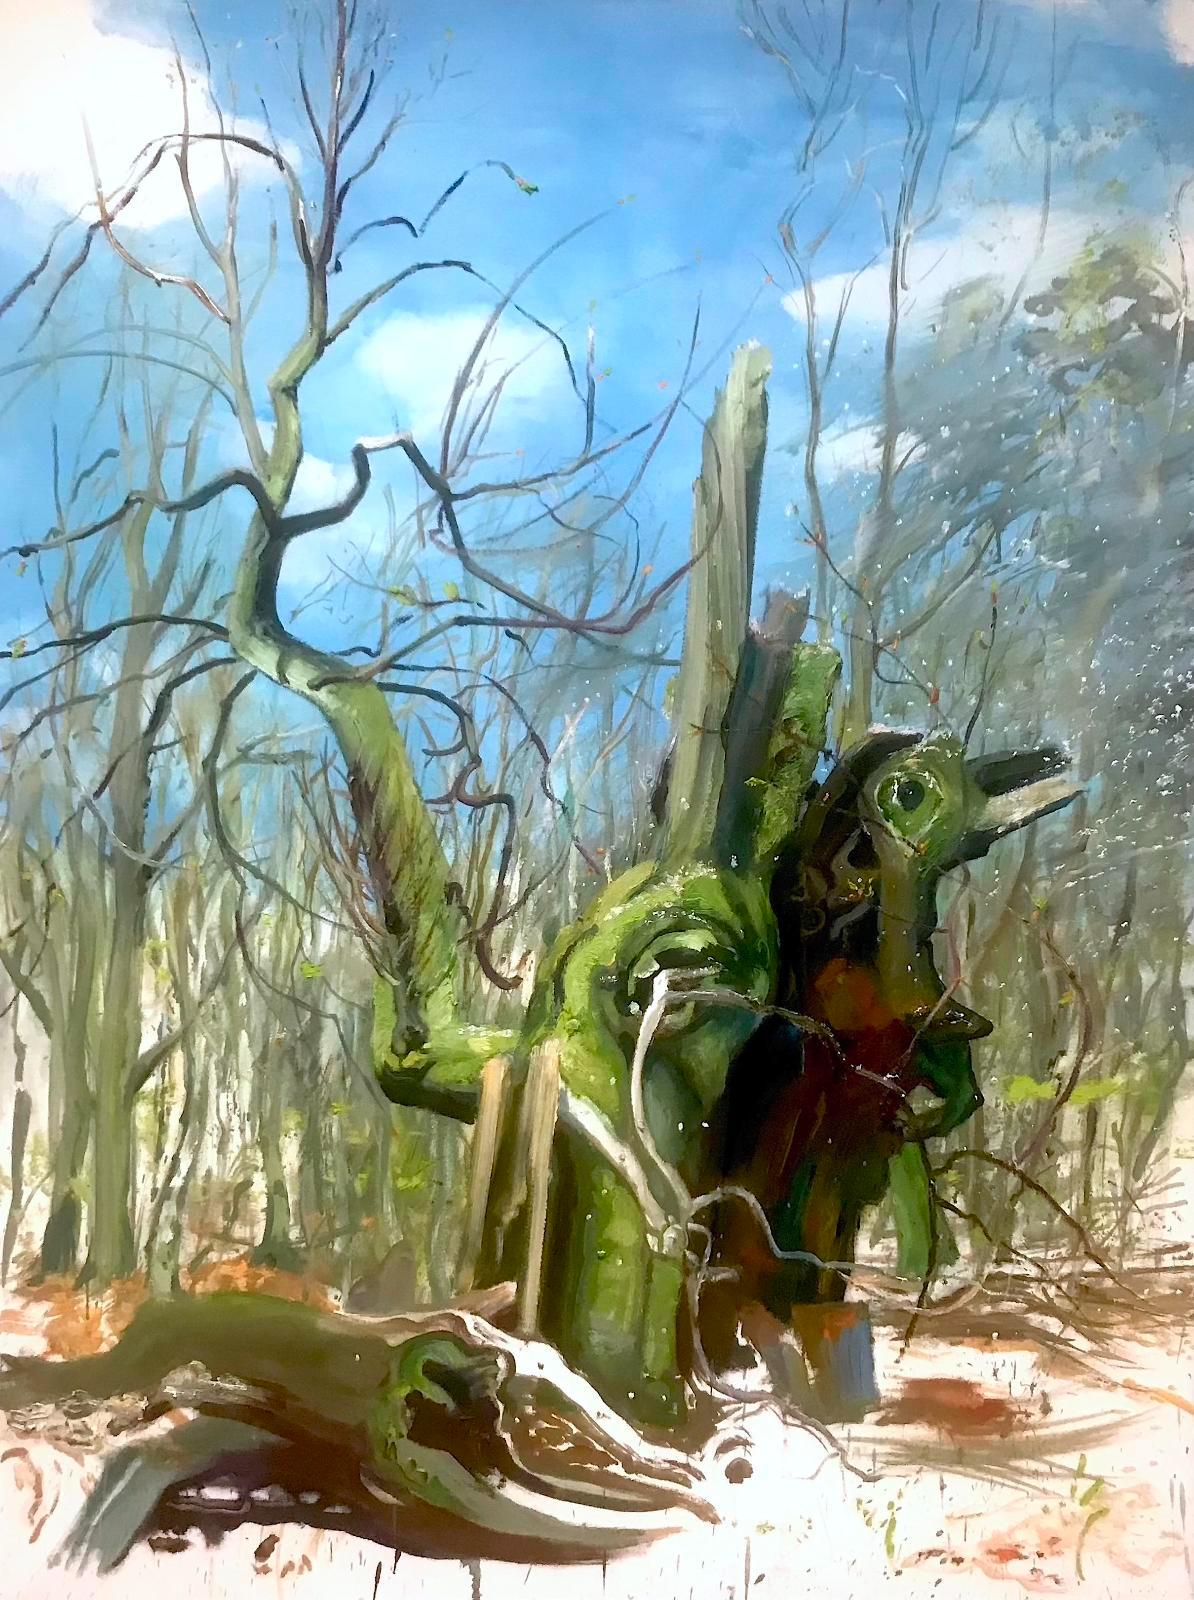 Saxana, Du, Doppelbaumporträt, DER PINGUIN, plein air 2019, Öl auf Leinwand, 160 x 120 cm